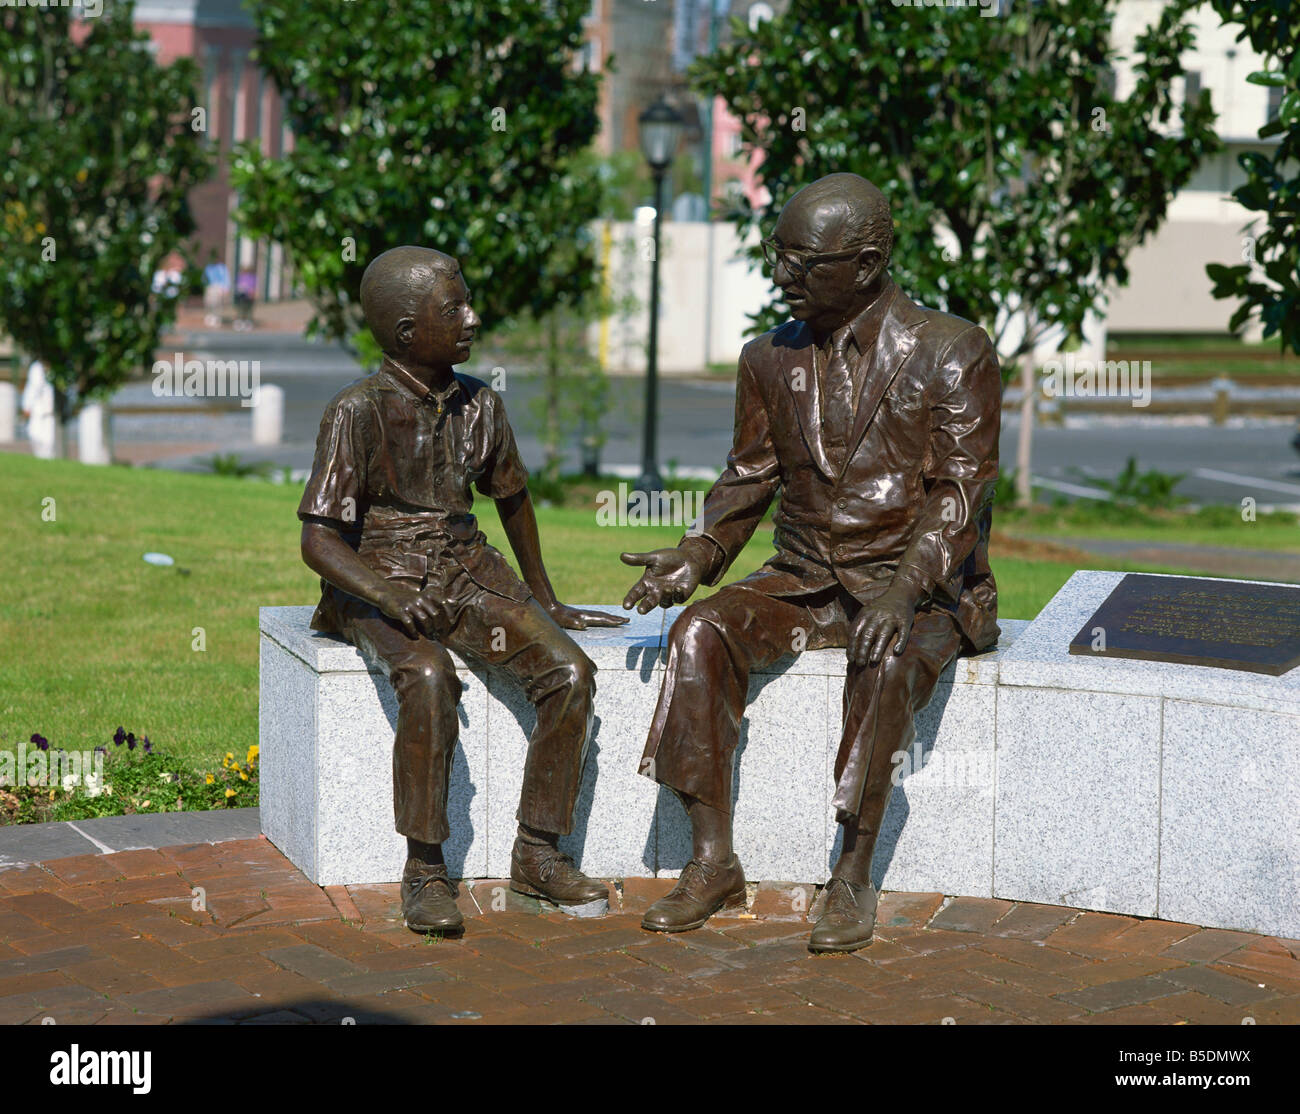 Bronze Statue Mann und der junge Woldenberg Riverfront Park New Orleans Louisiana Vereinigte Staaten von Amerika Nordamerika Stockfoto